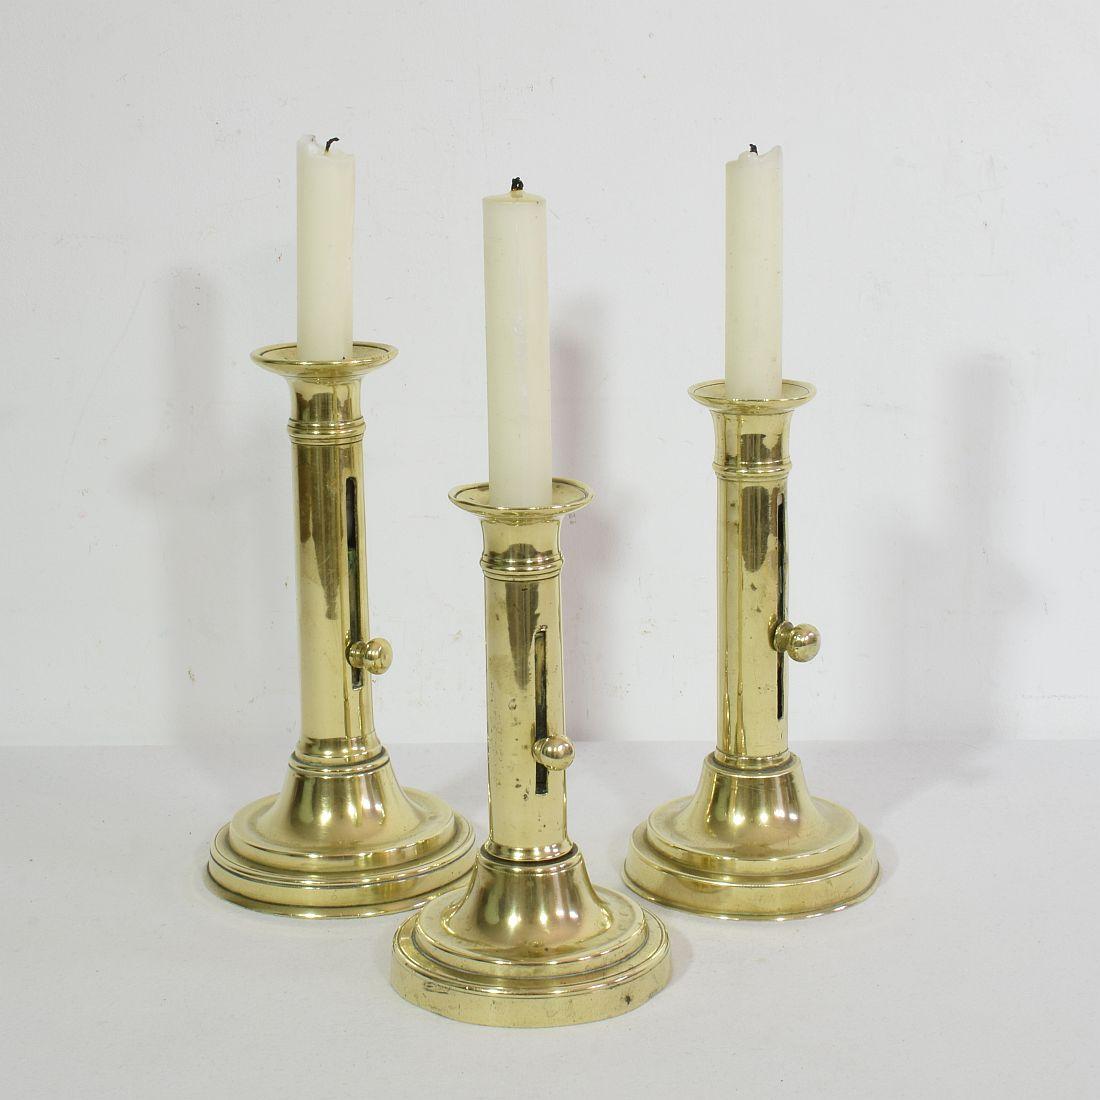 Wunderschöne Kollektion von 3 Bistro-Kerzenhaltern aus Messing zum Hochschieben.
Frankreich um 1850-1900
Maße: H:17-20cm B:9,5-10,5cm.